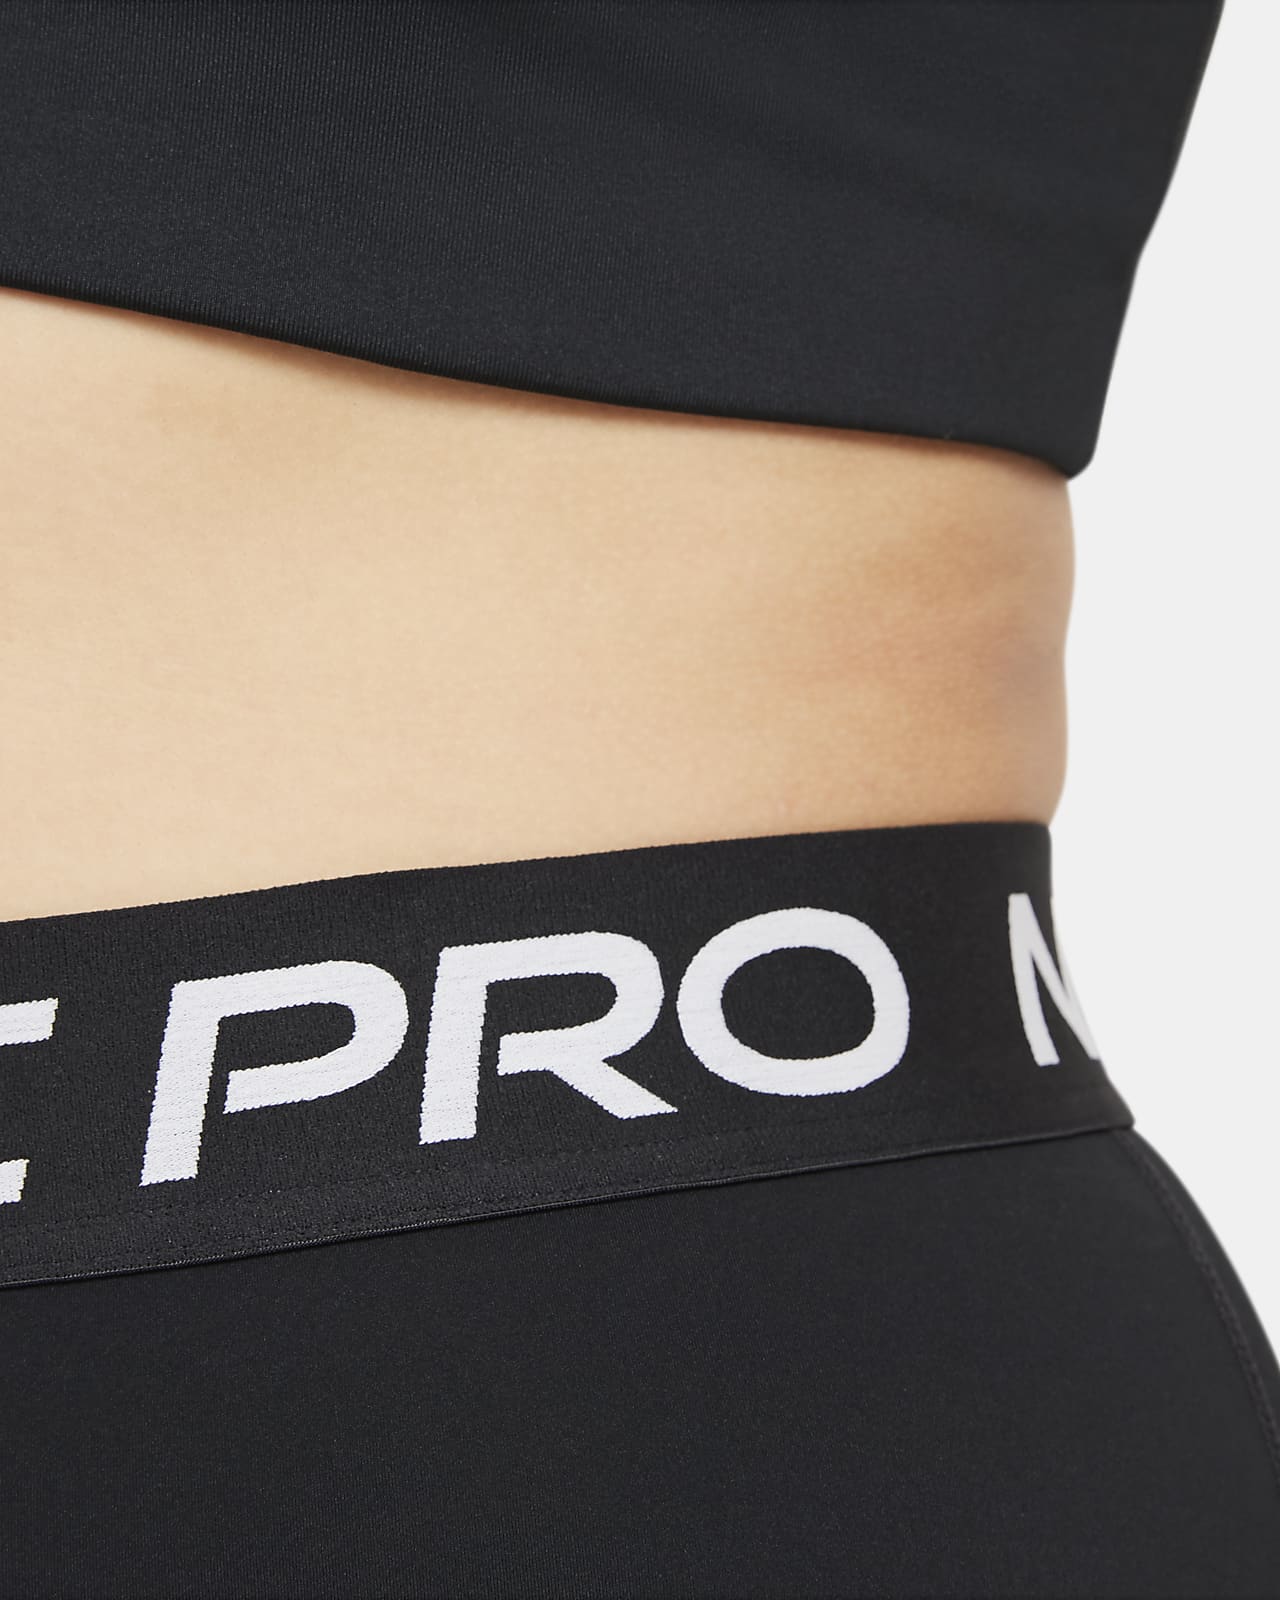 Nike Pro Tayt 🌸Fırsat Ürün 💃 Fiyat: 249₺ ⚜️ Beden Aralığı